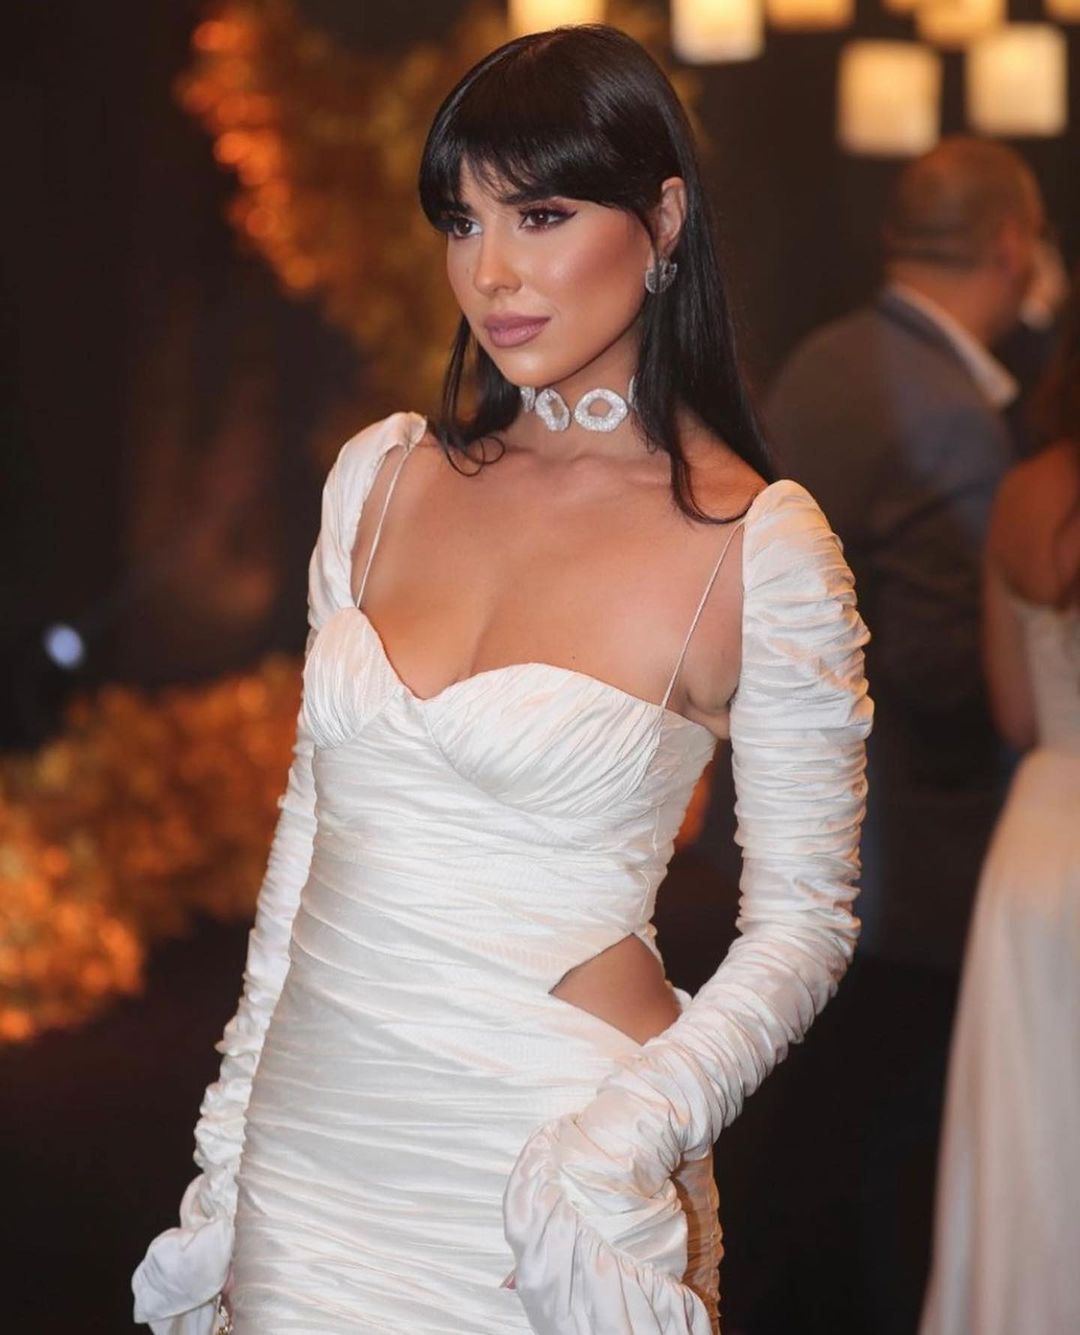 إطلالة زينة مكي في حفل مسابقة ملكة جمال لبنان